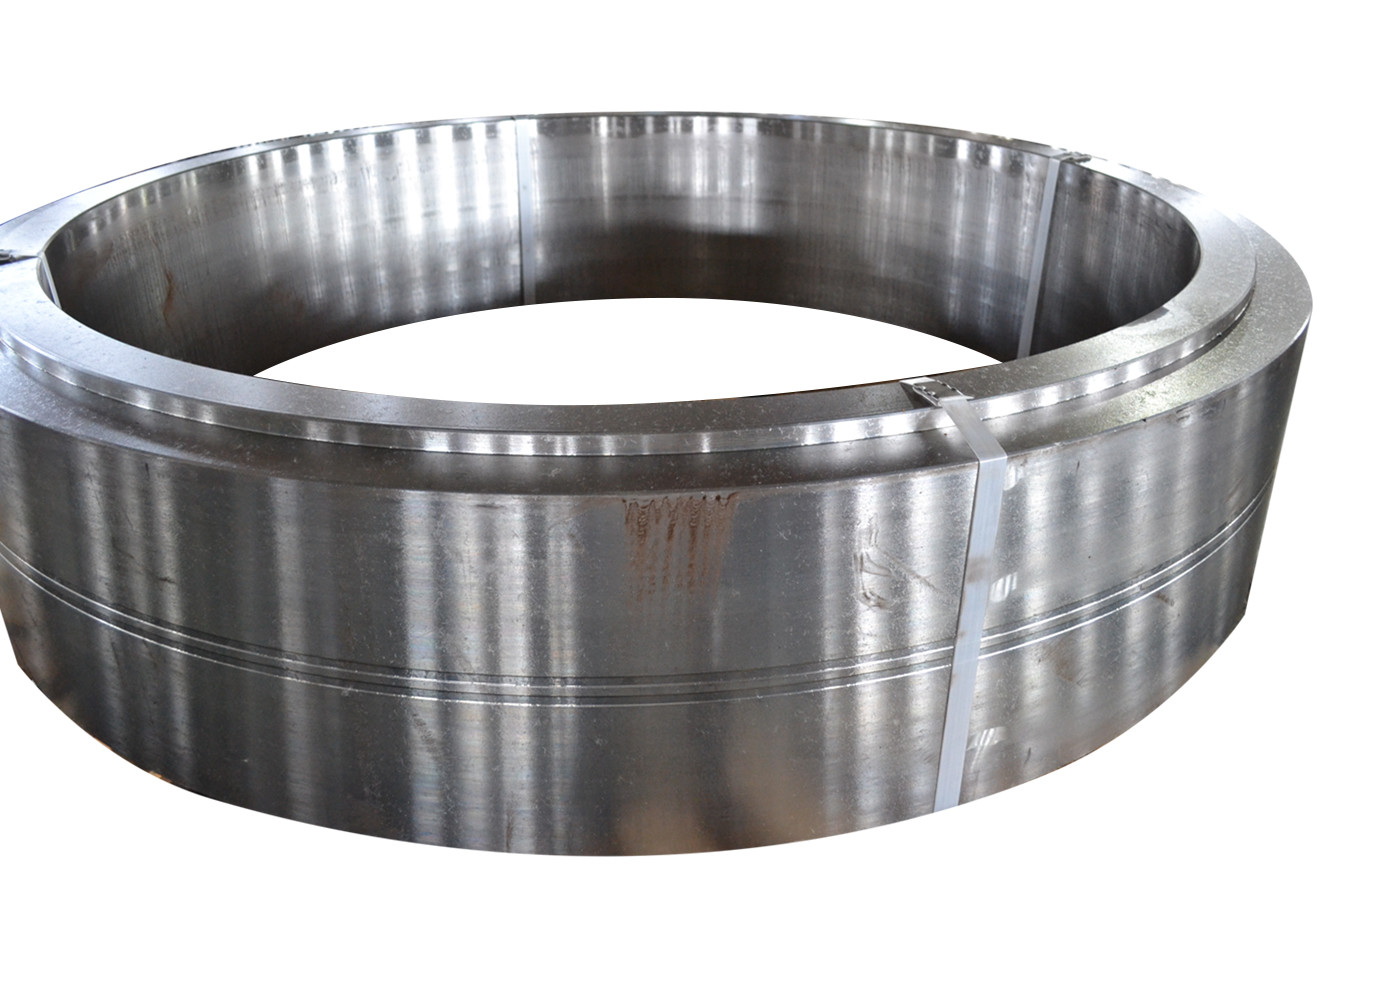 La métallurgie ASME SUS302 1,4307 a forgé les anneaux en acier